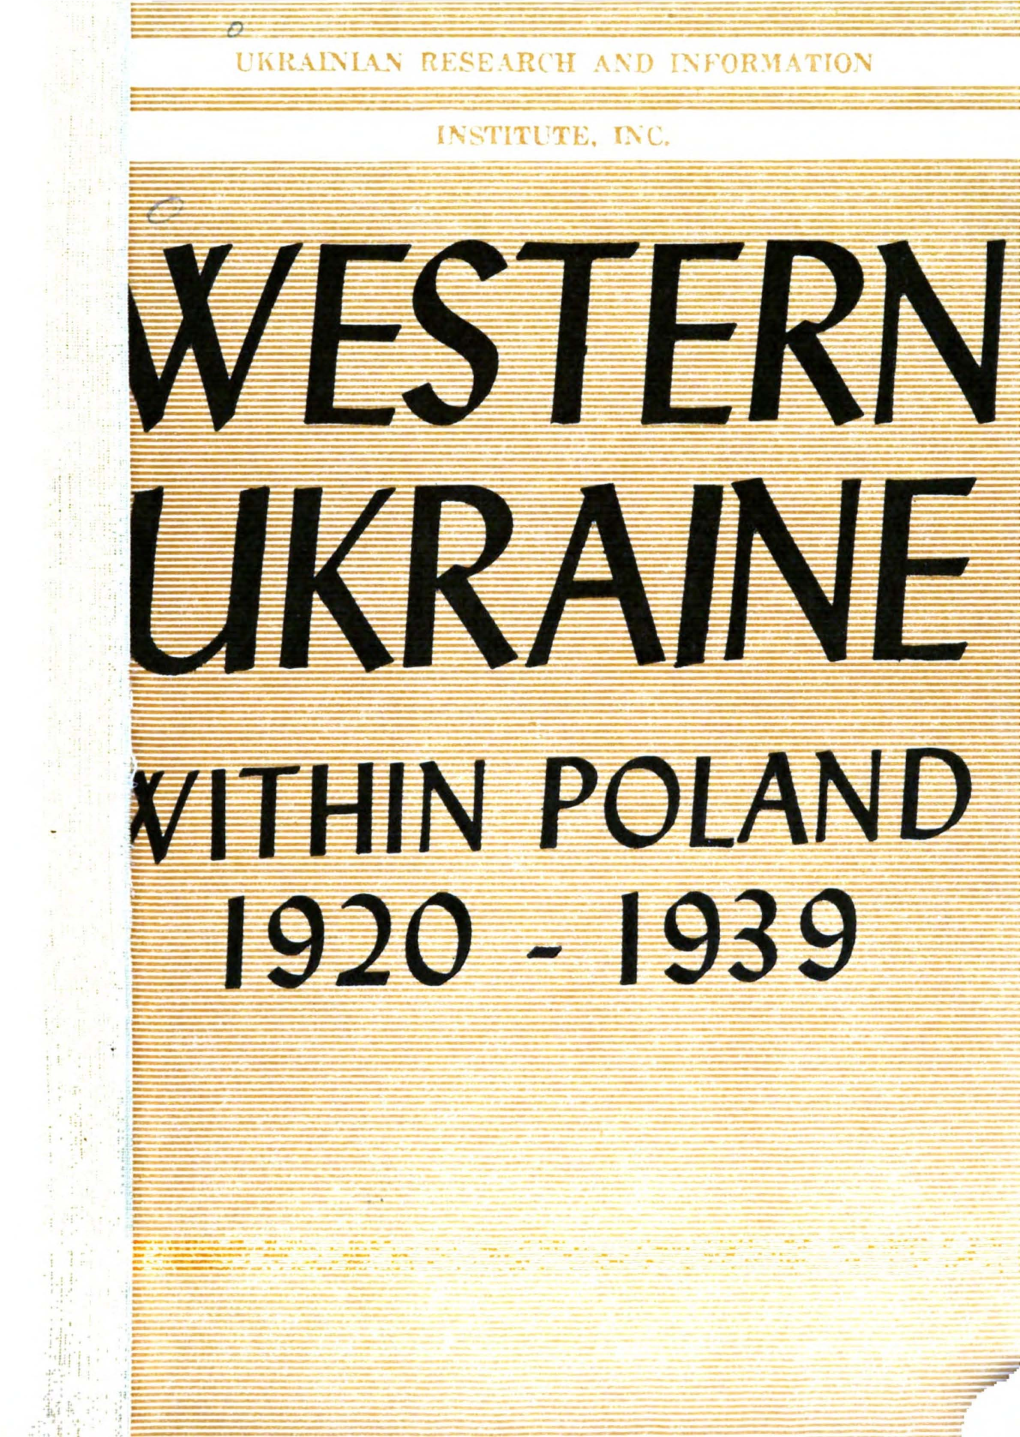 Western Ukraine Poland 1920-1939 (Ethnic Relationships)